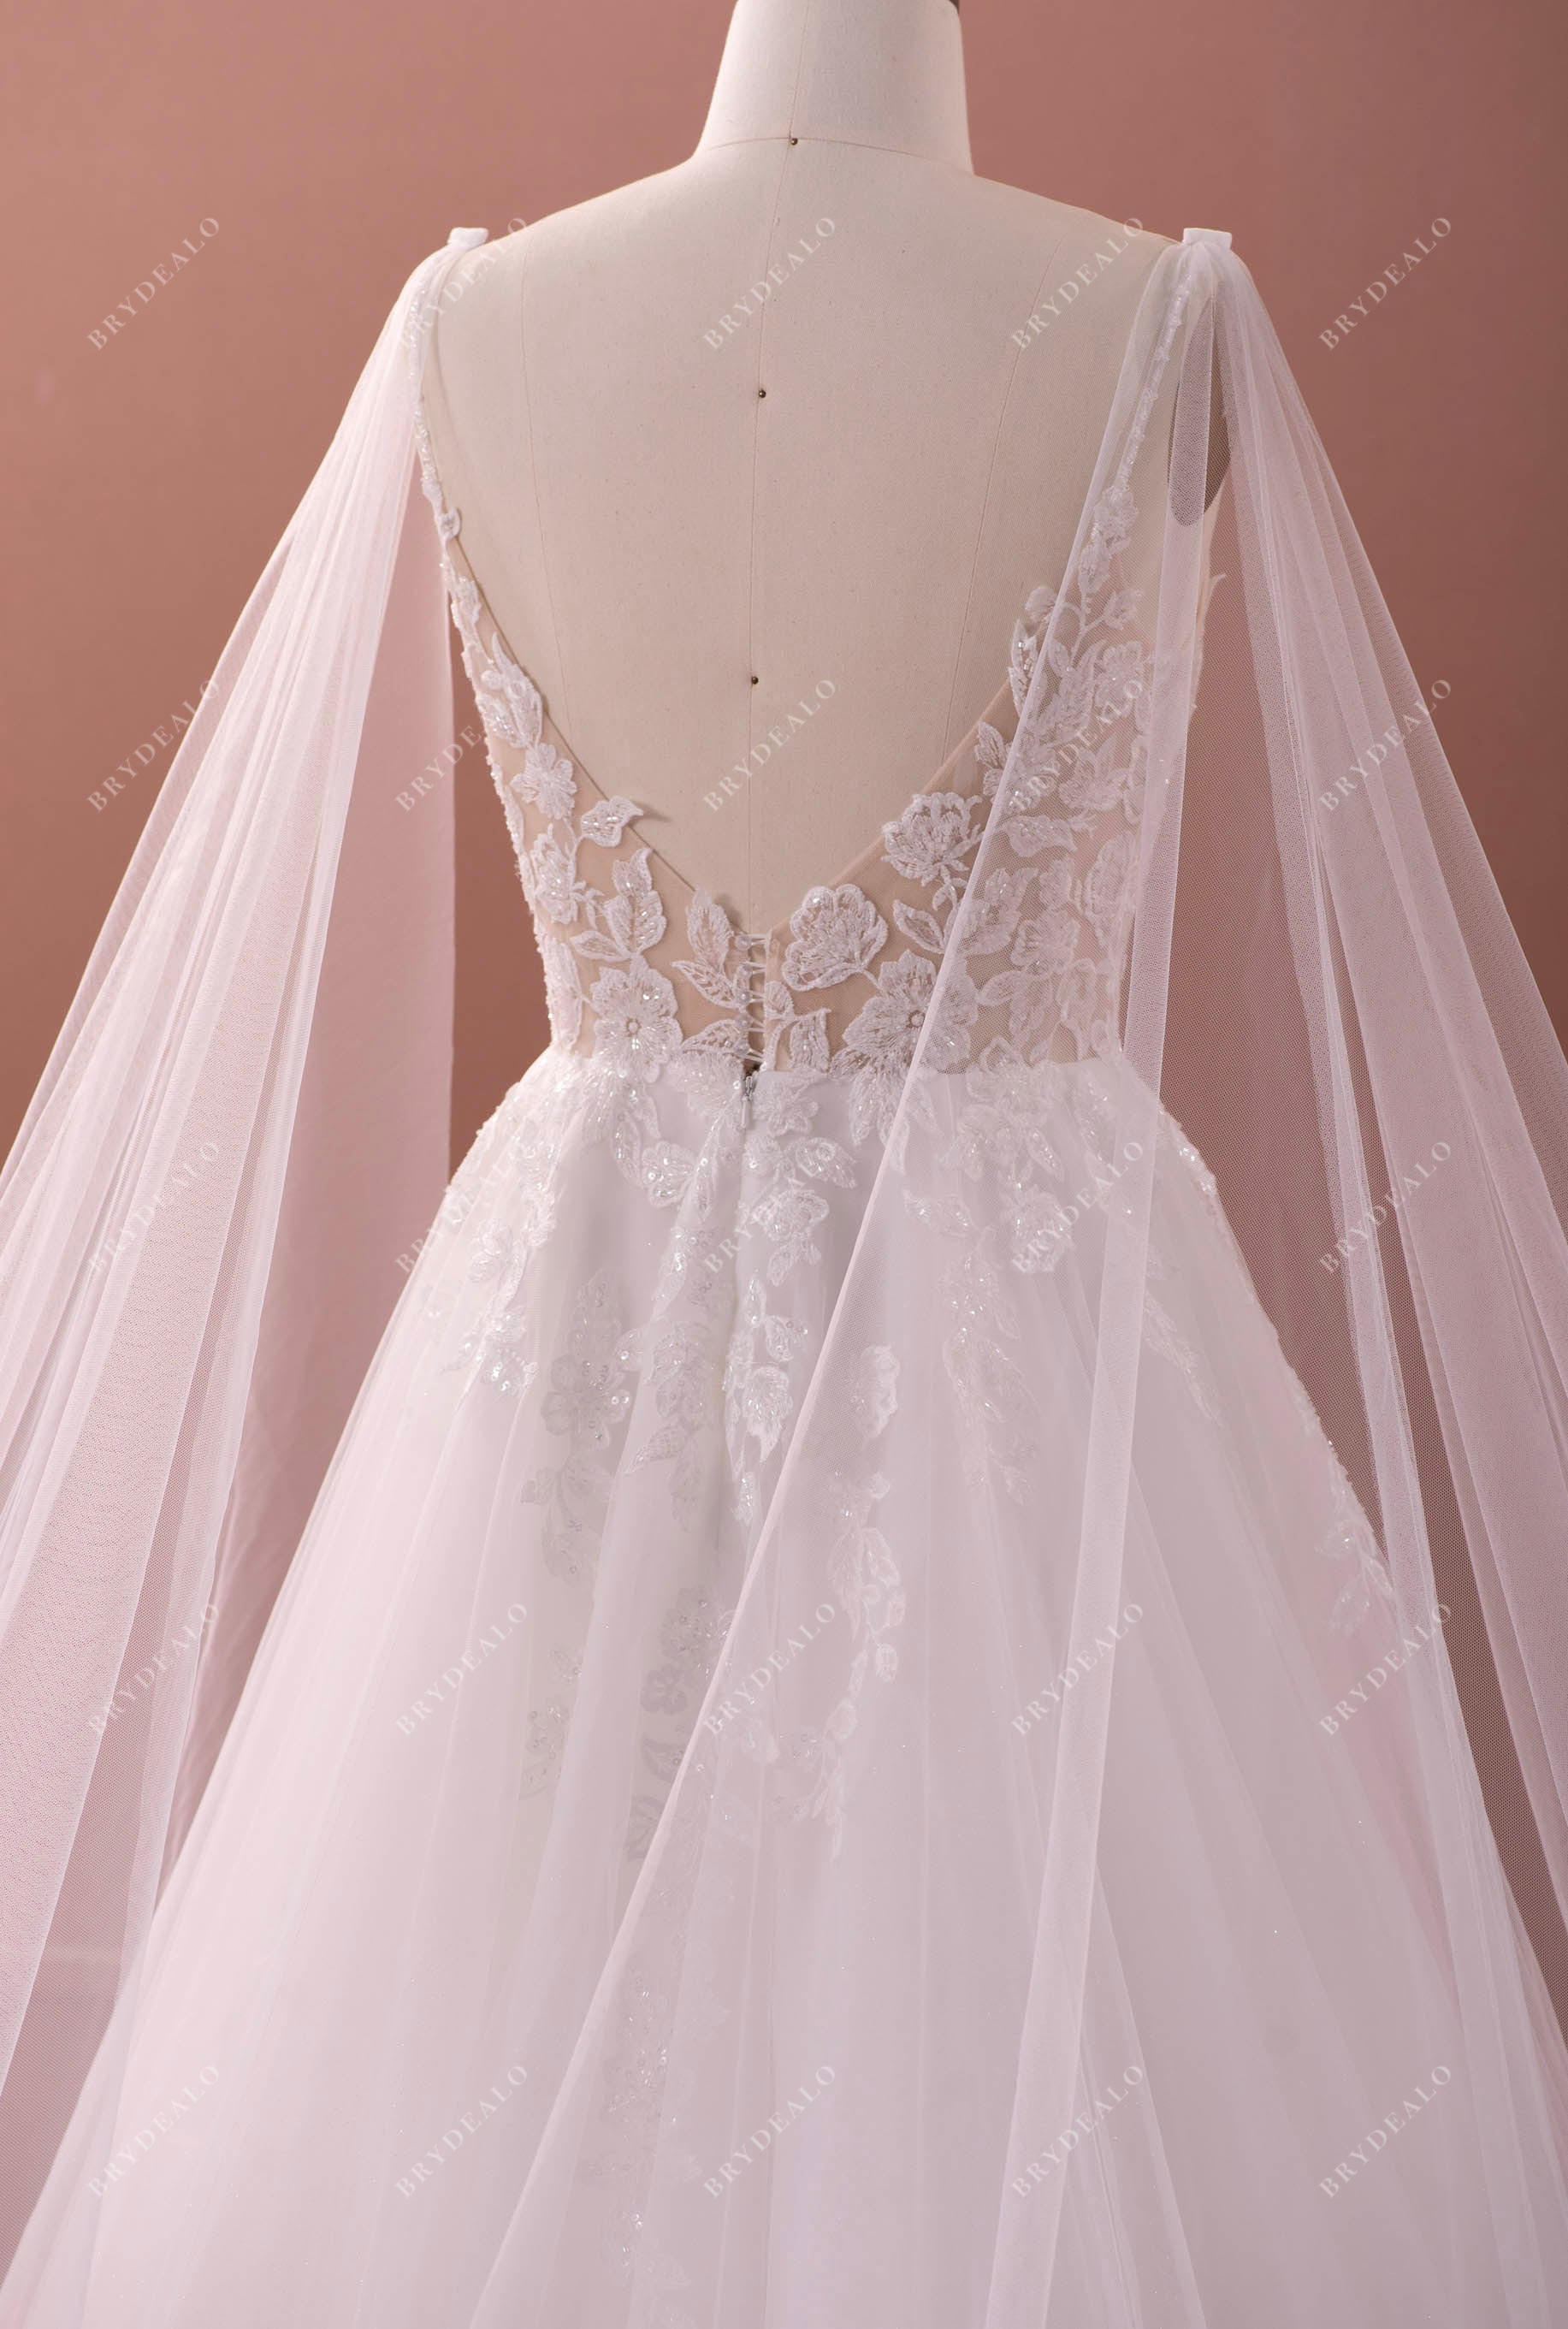 shoulder veil lace bridal gown